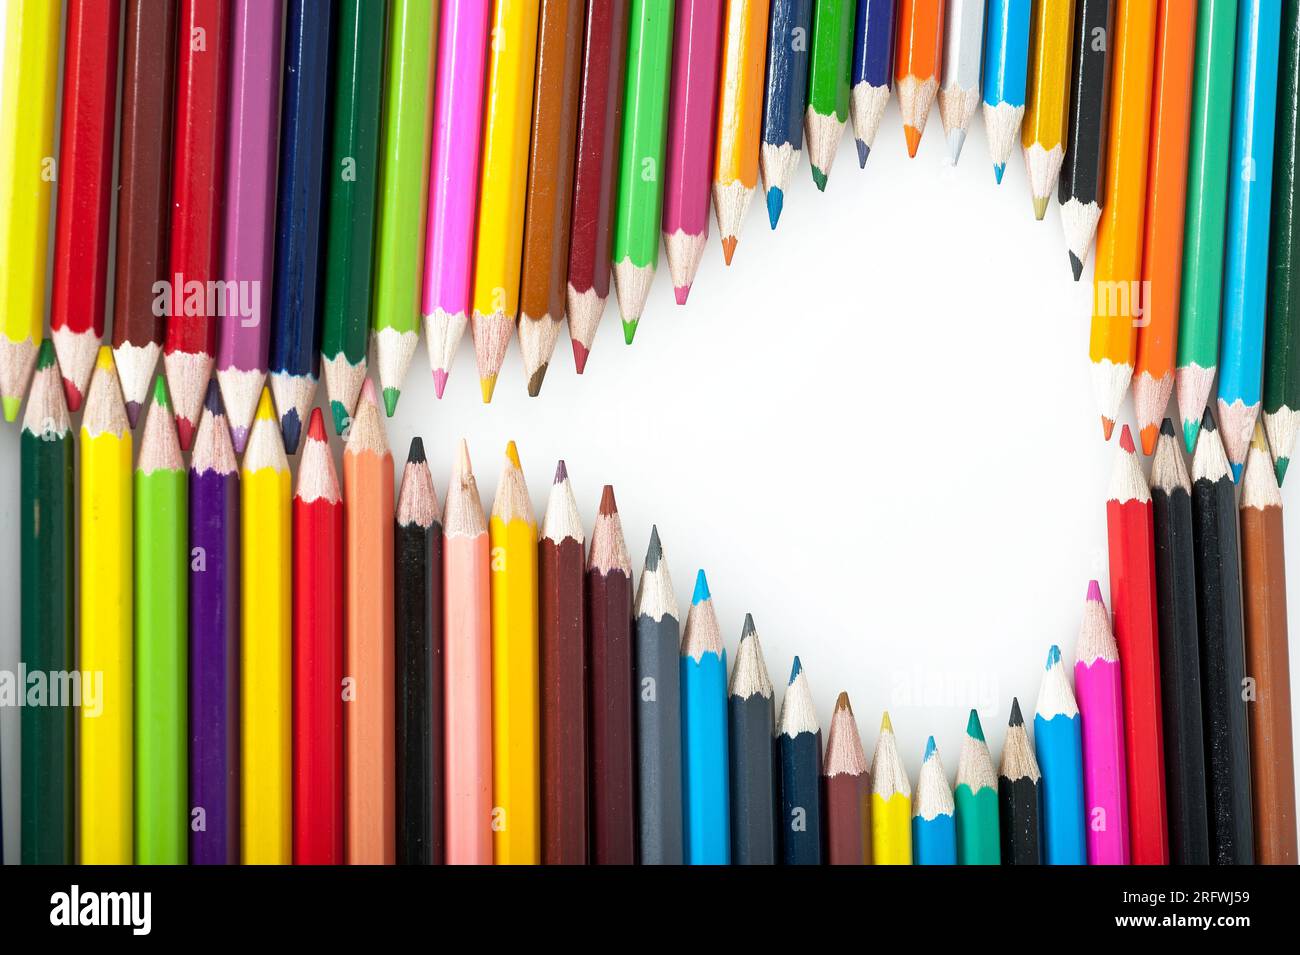 Los lápices de colores son herramientas educativas y de juego indispensables para niños y estudiantes, así como materiales de escritura, dibujo y educación utilizados por Foto de stock